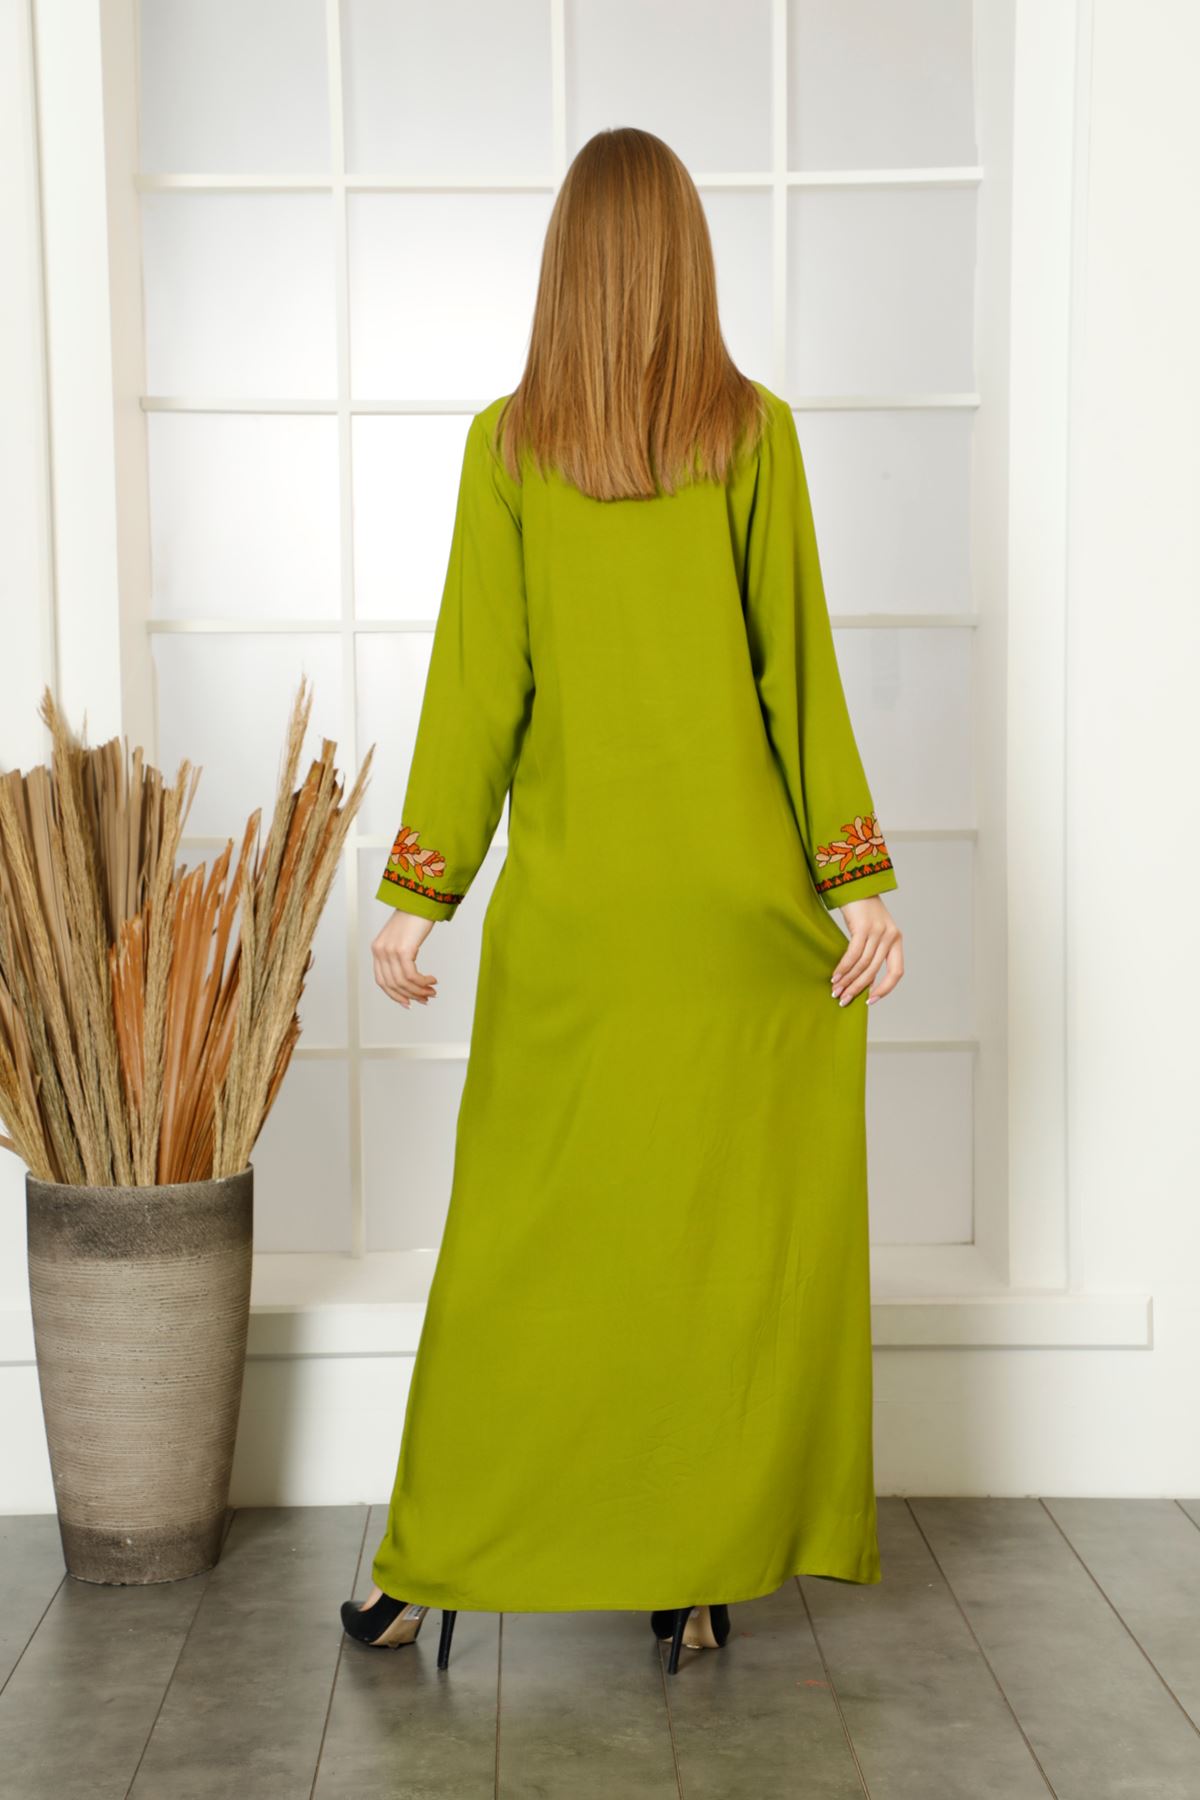 Laila Kadın Fıstık Yeşili Nakışlı Düz Maxi Viskon Elbise